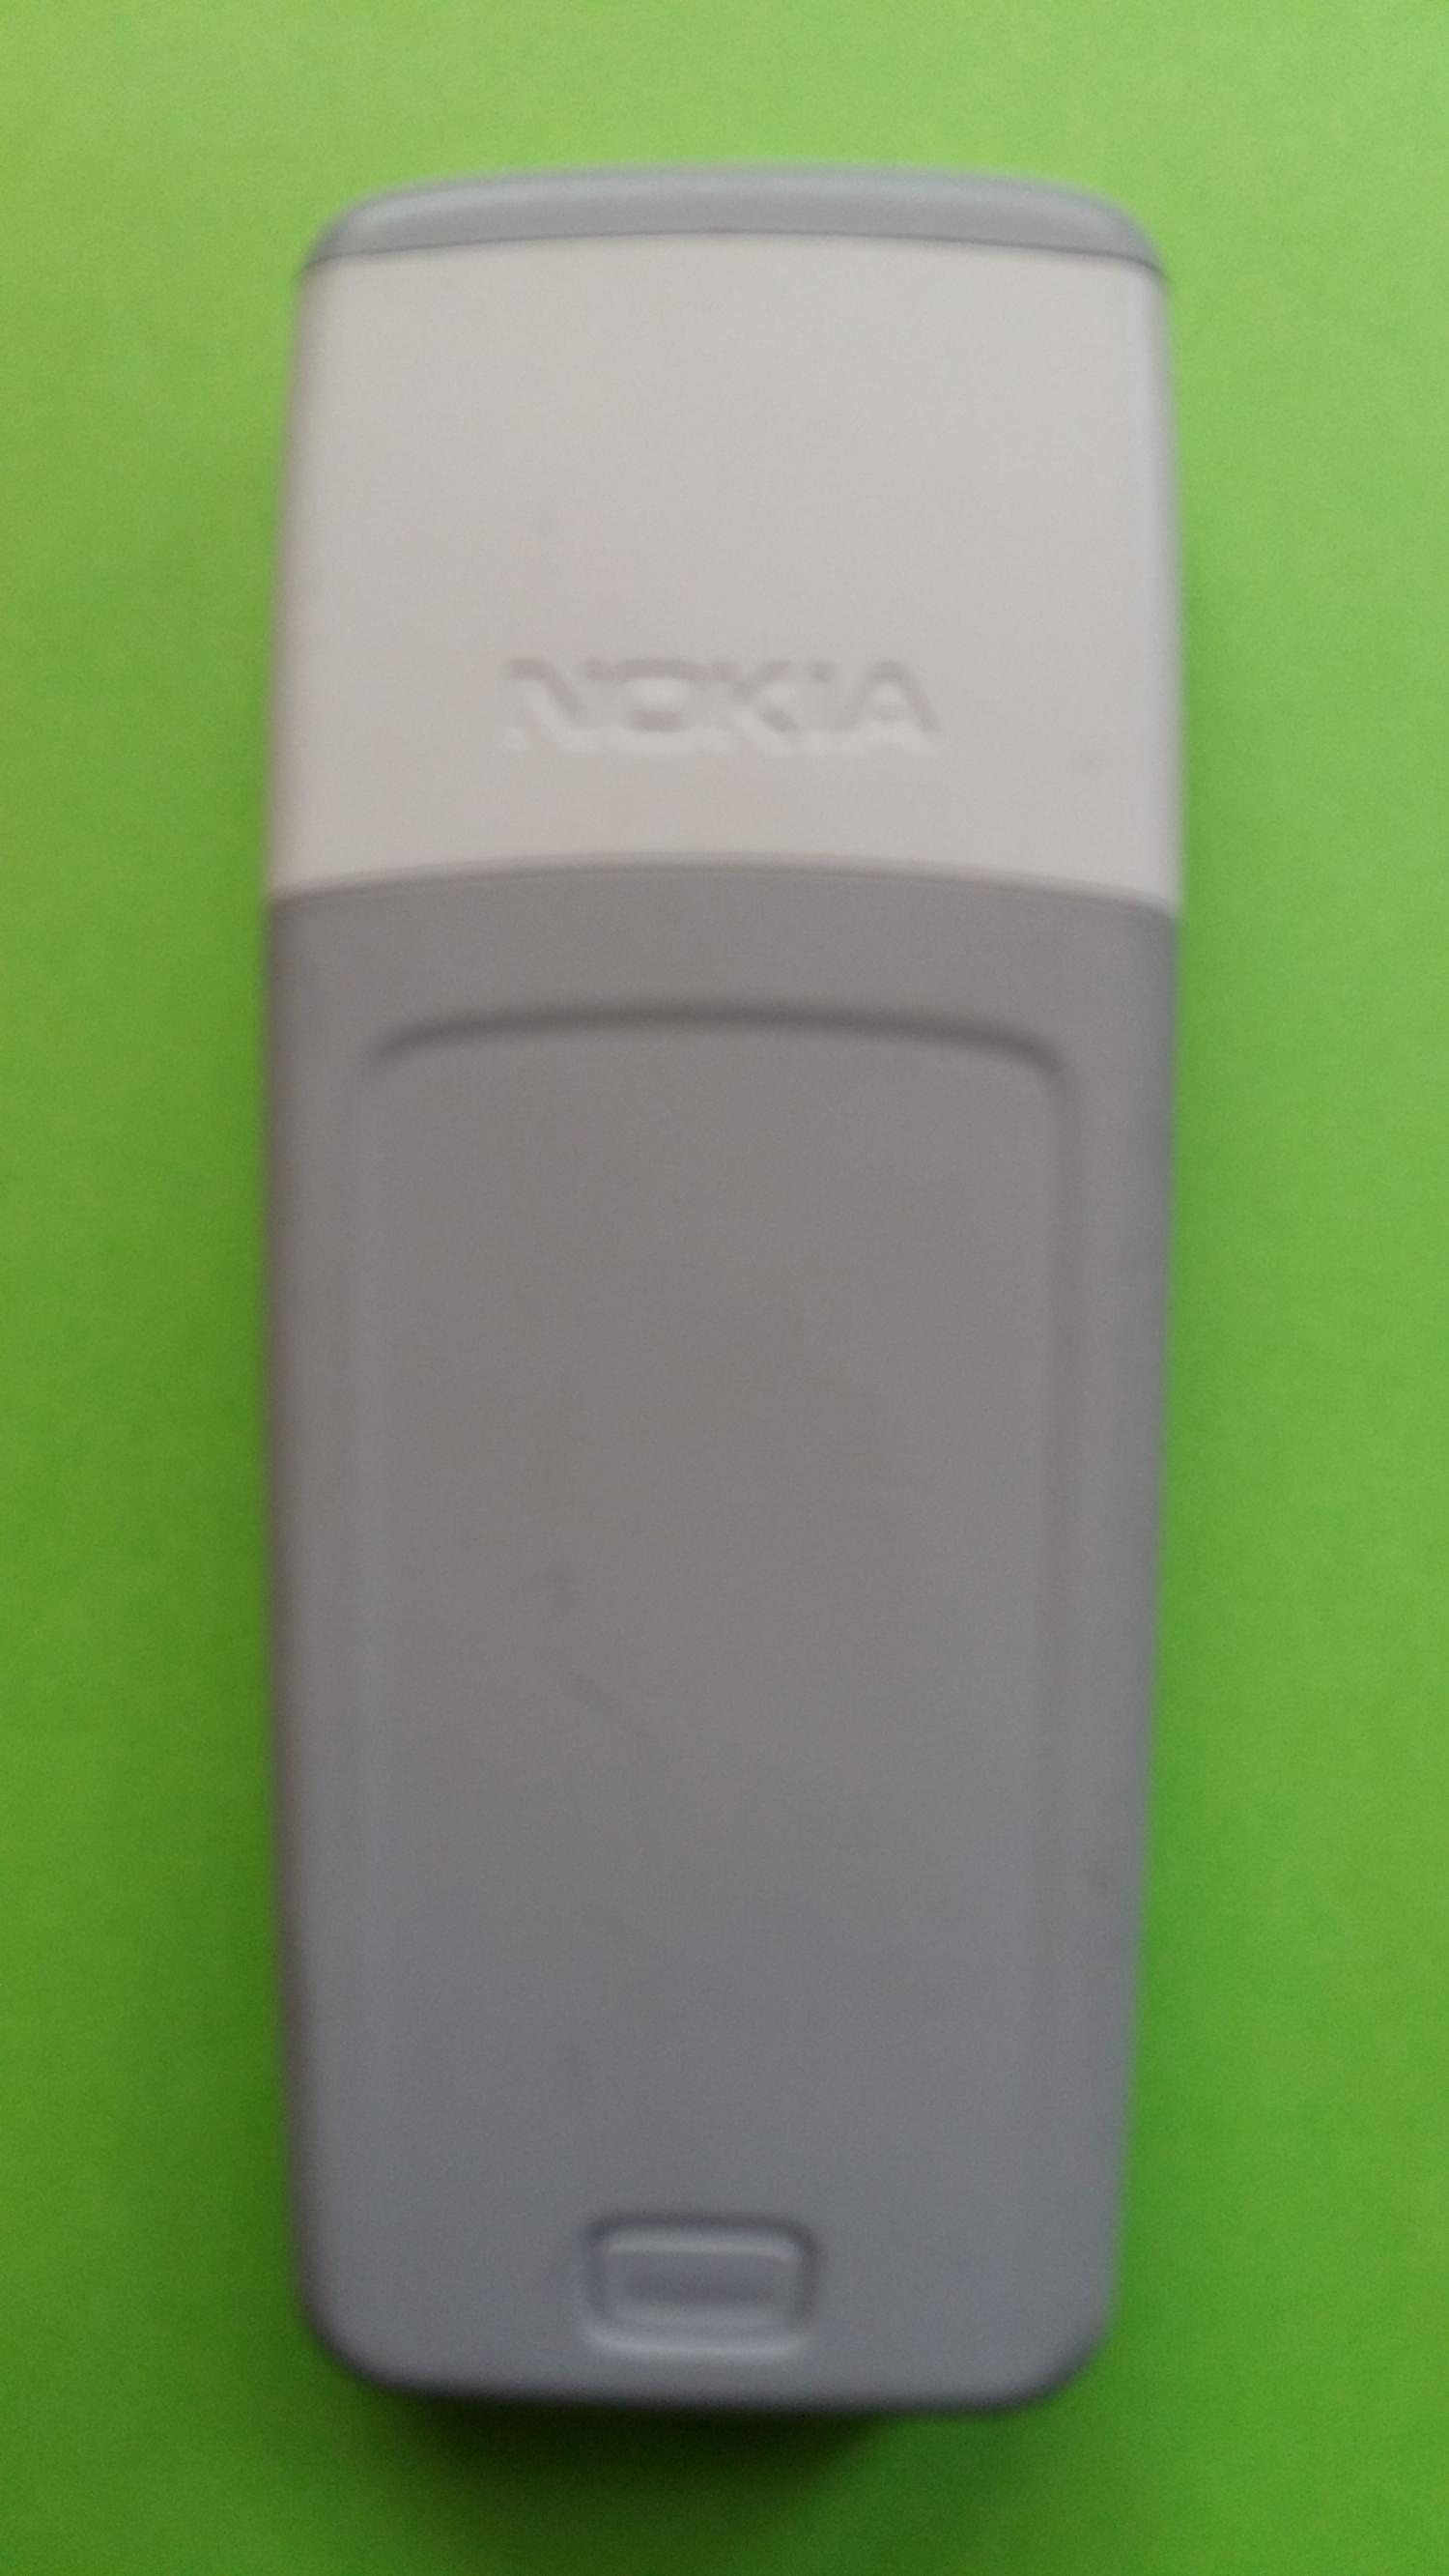 image-7300735-Nokia 1110i (3)2.jpg